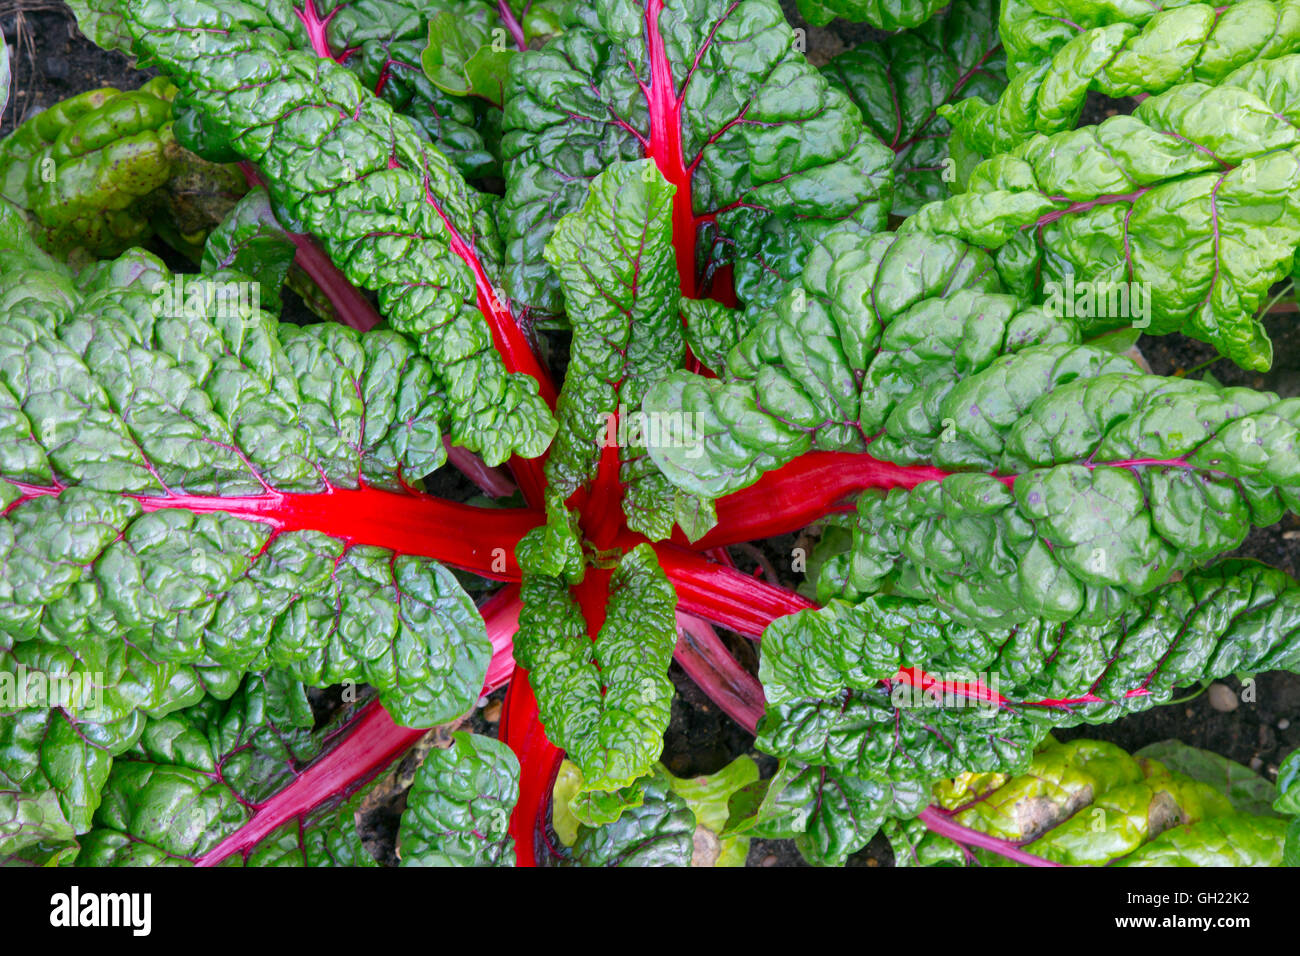 Rhabarber Mangold Beta Vulgaris grüne Blattgemüse oft in der mediterranen Küche verwendet Stockfoto